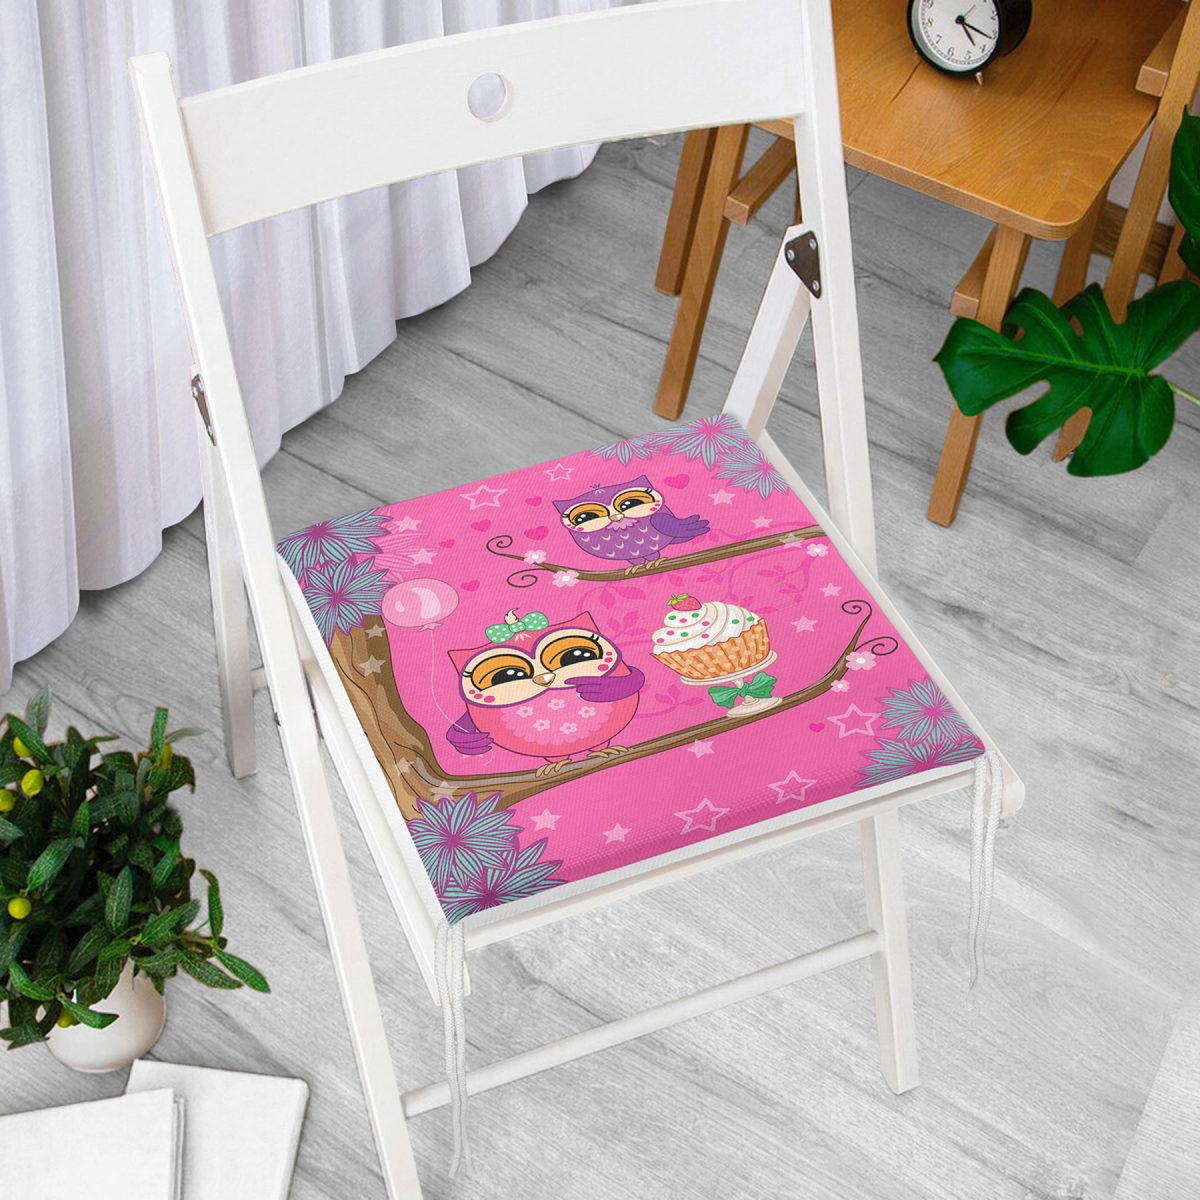 Çocuk Odası Pembe Baykuş Tasarımlı Fermuarlı Sandalye Minderi Realhomes